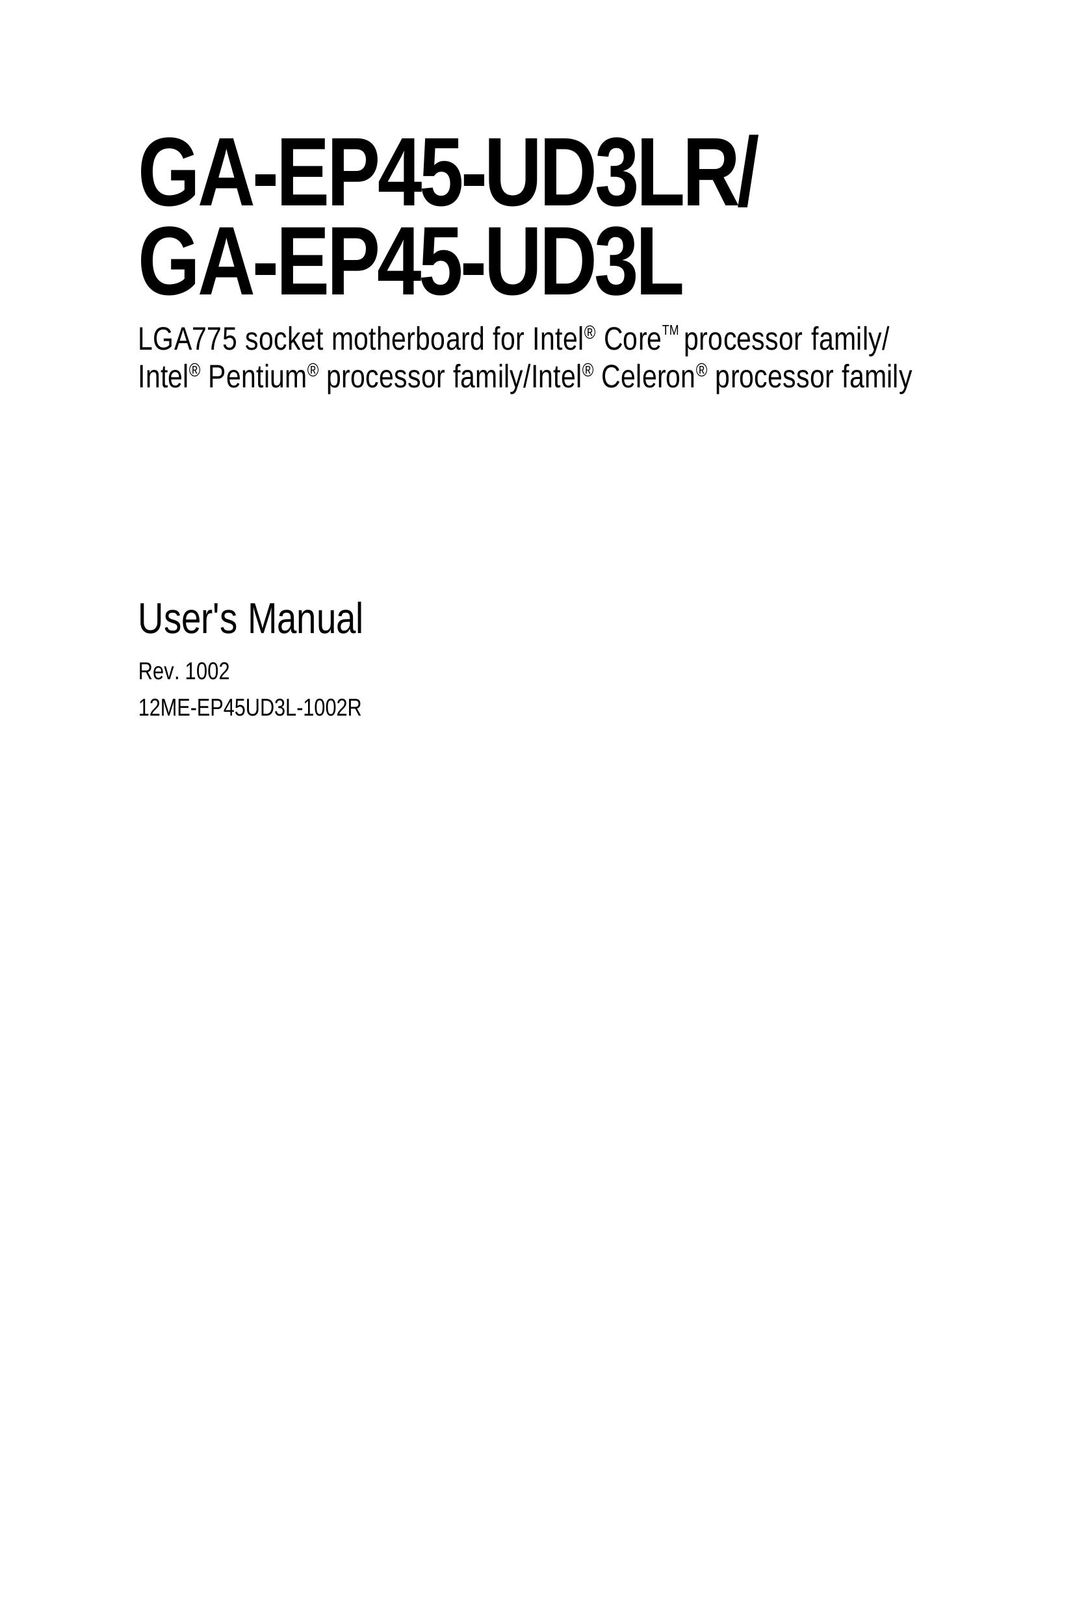 Gigabyte GA-EP45-UD3L Computer Hardware User Manual